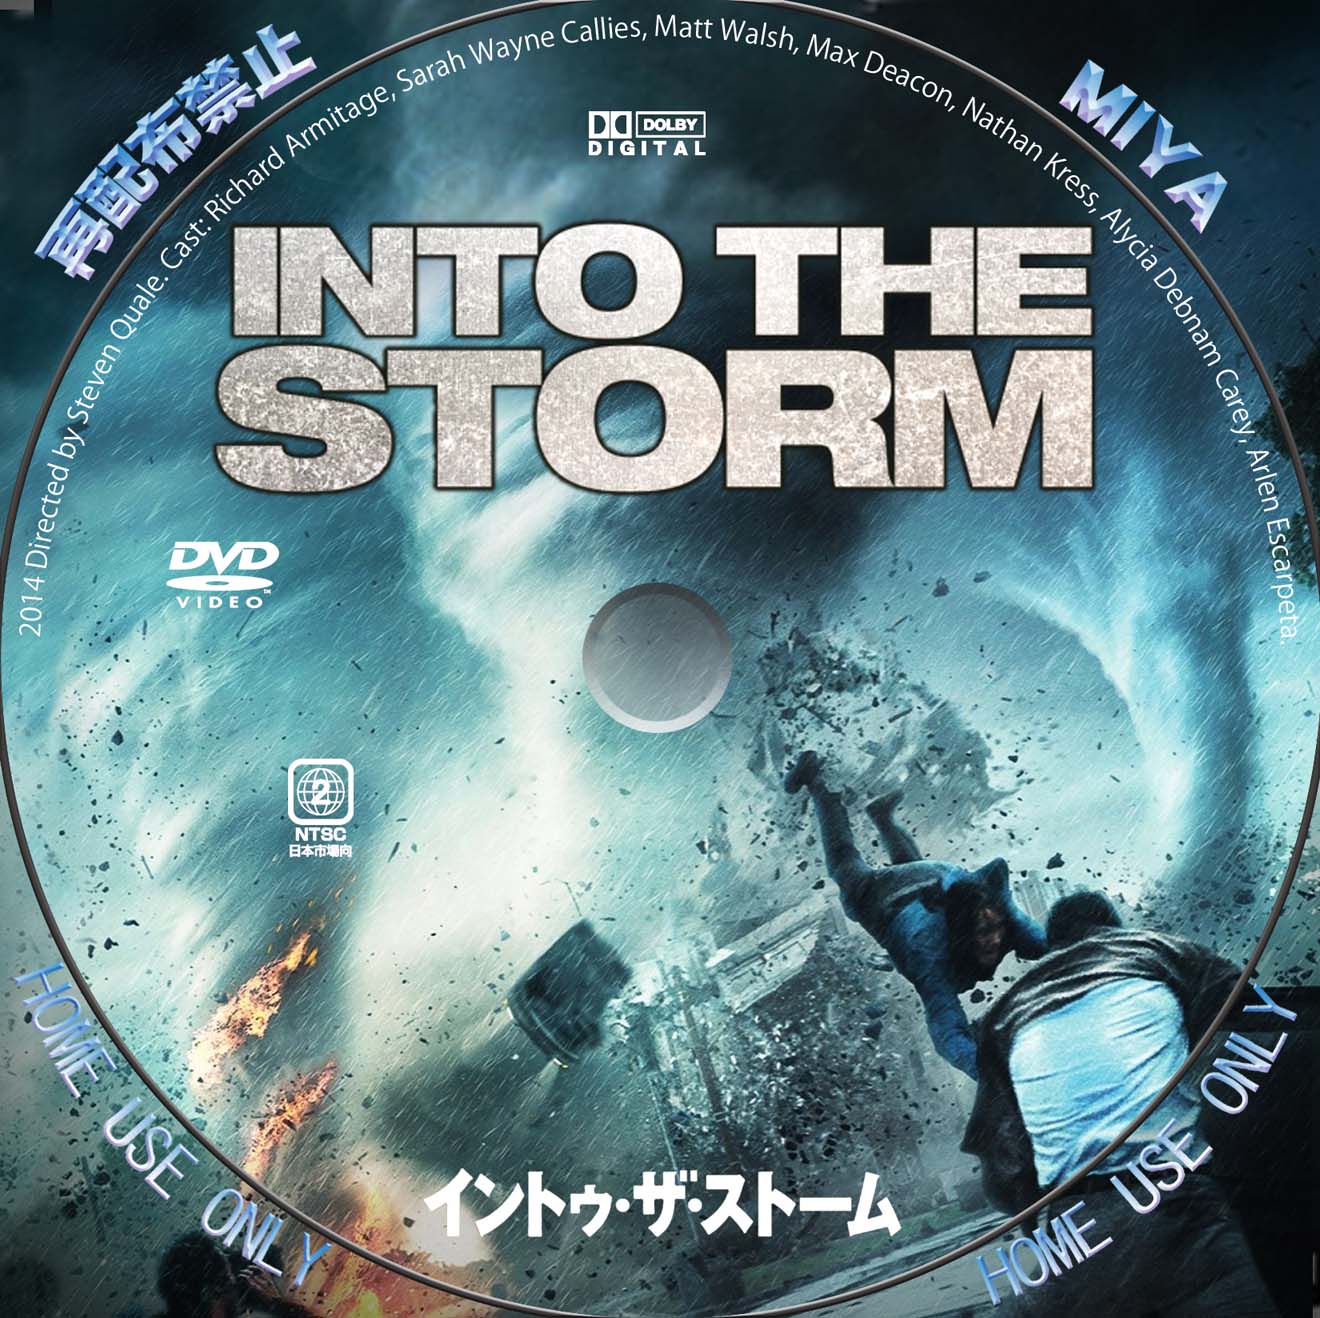 イントゥ・ザ・ストーム DVD/BDレーベル